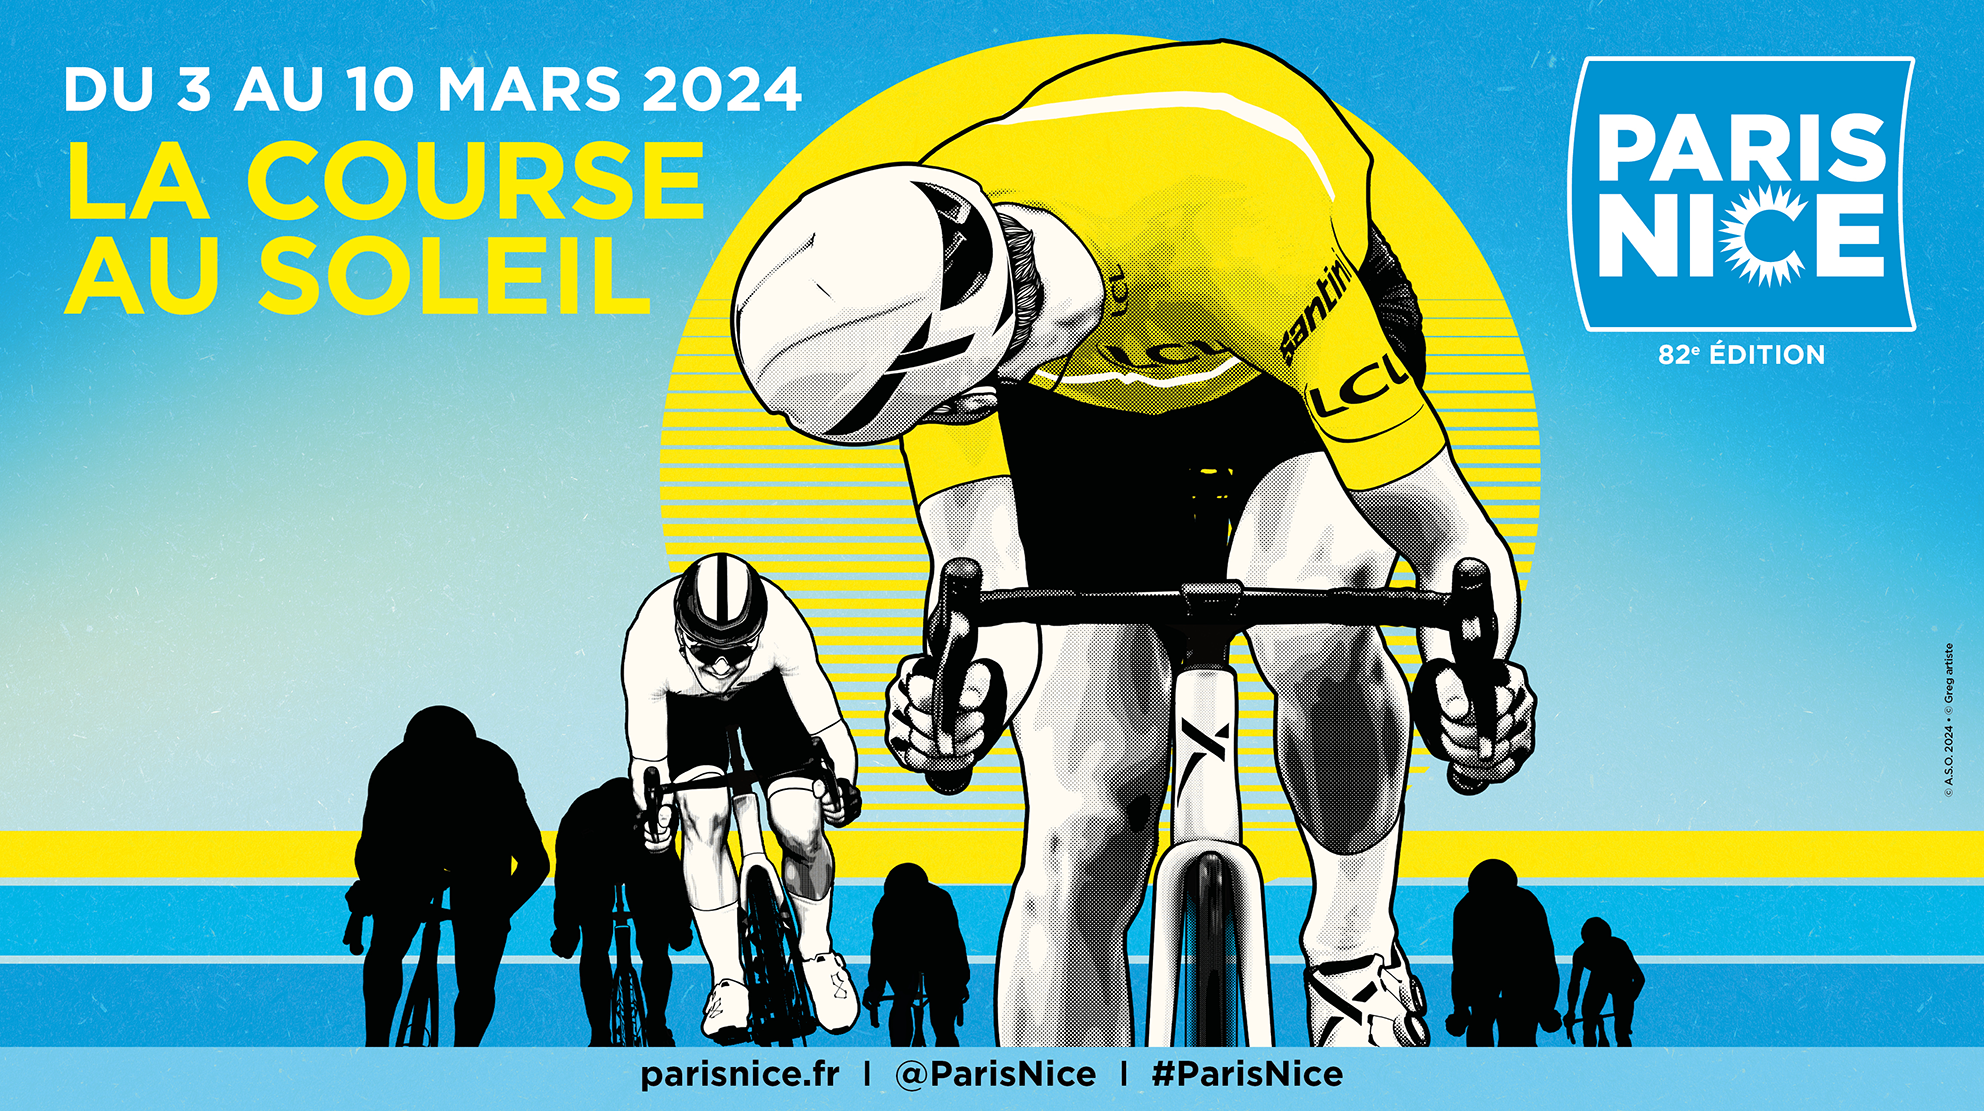 Alle leuke evenementen! : Départ de la 5ème étape de l’épreuve cycliste Paris-Nice